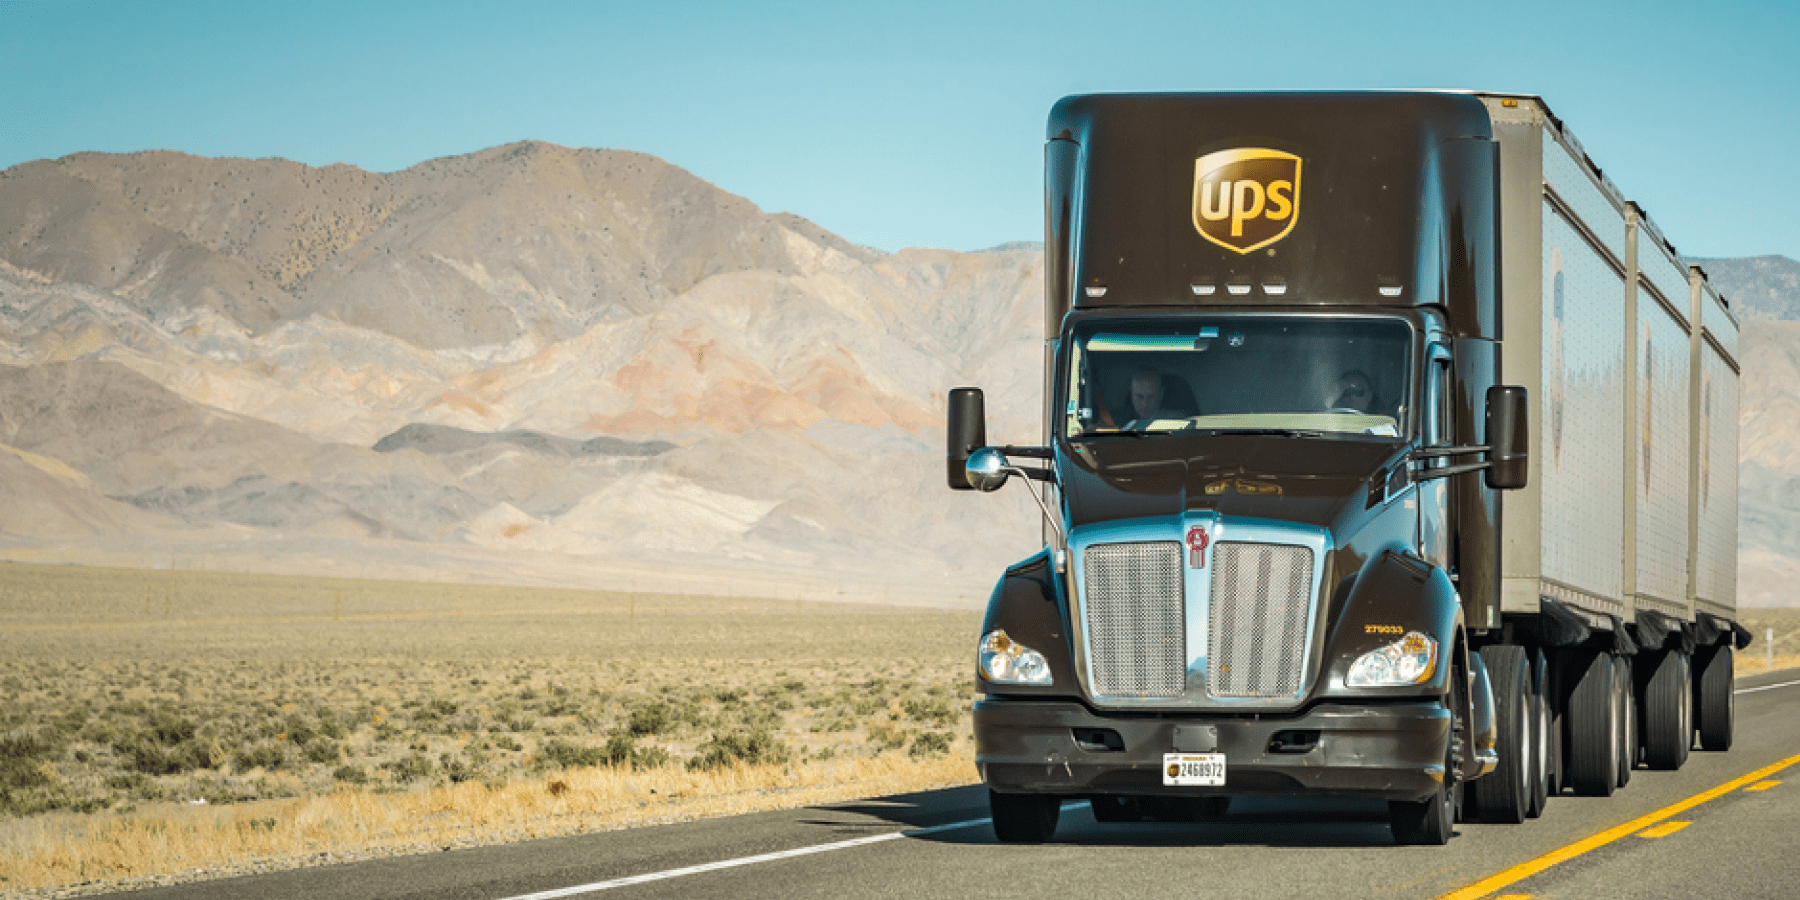 UPS Truck on desert highway